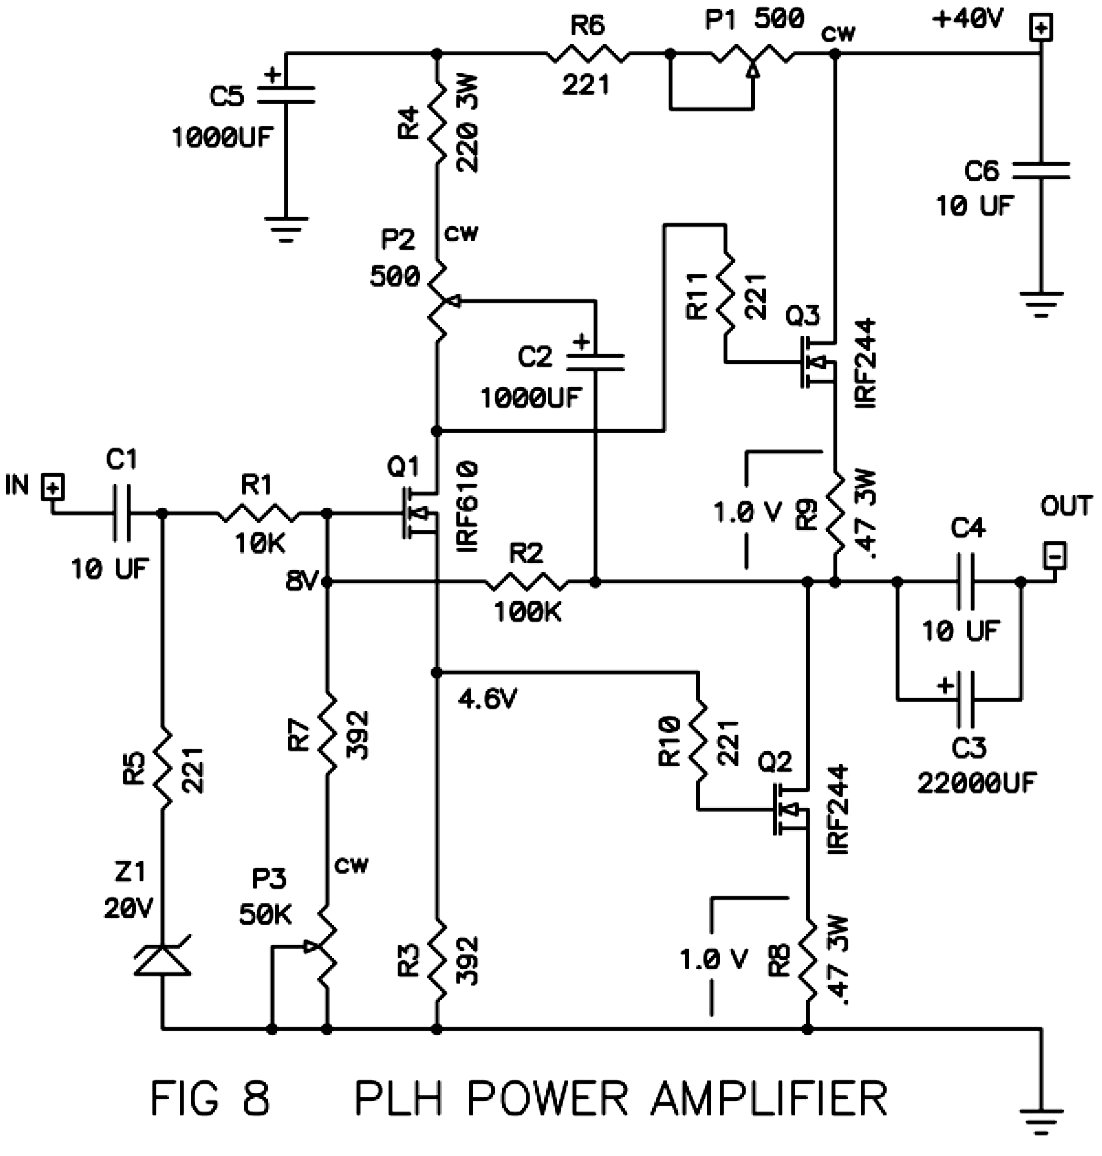 Схема PLH усилителя класса А на полевых транзисторах 